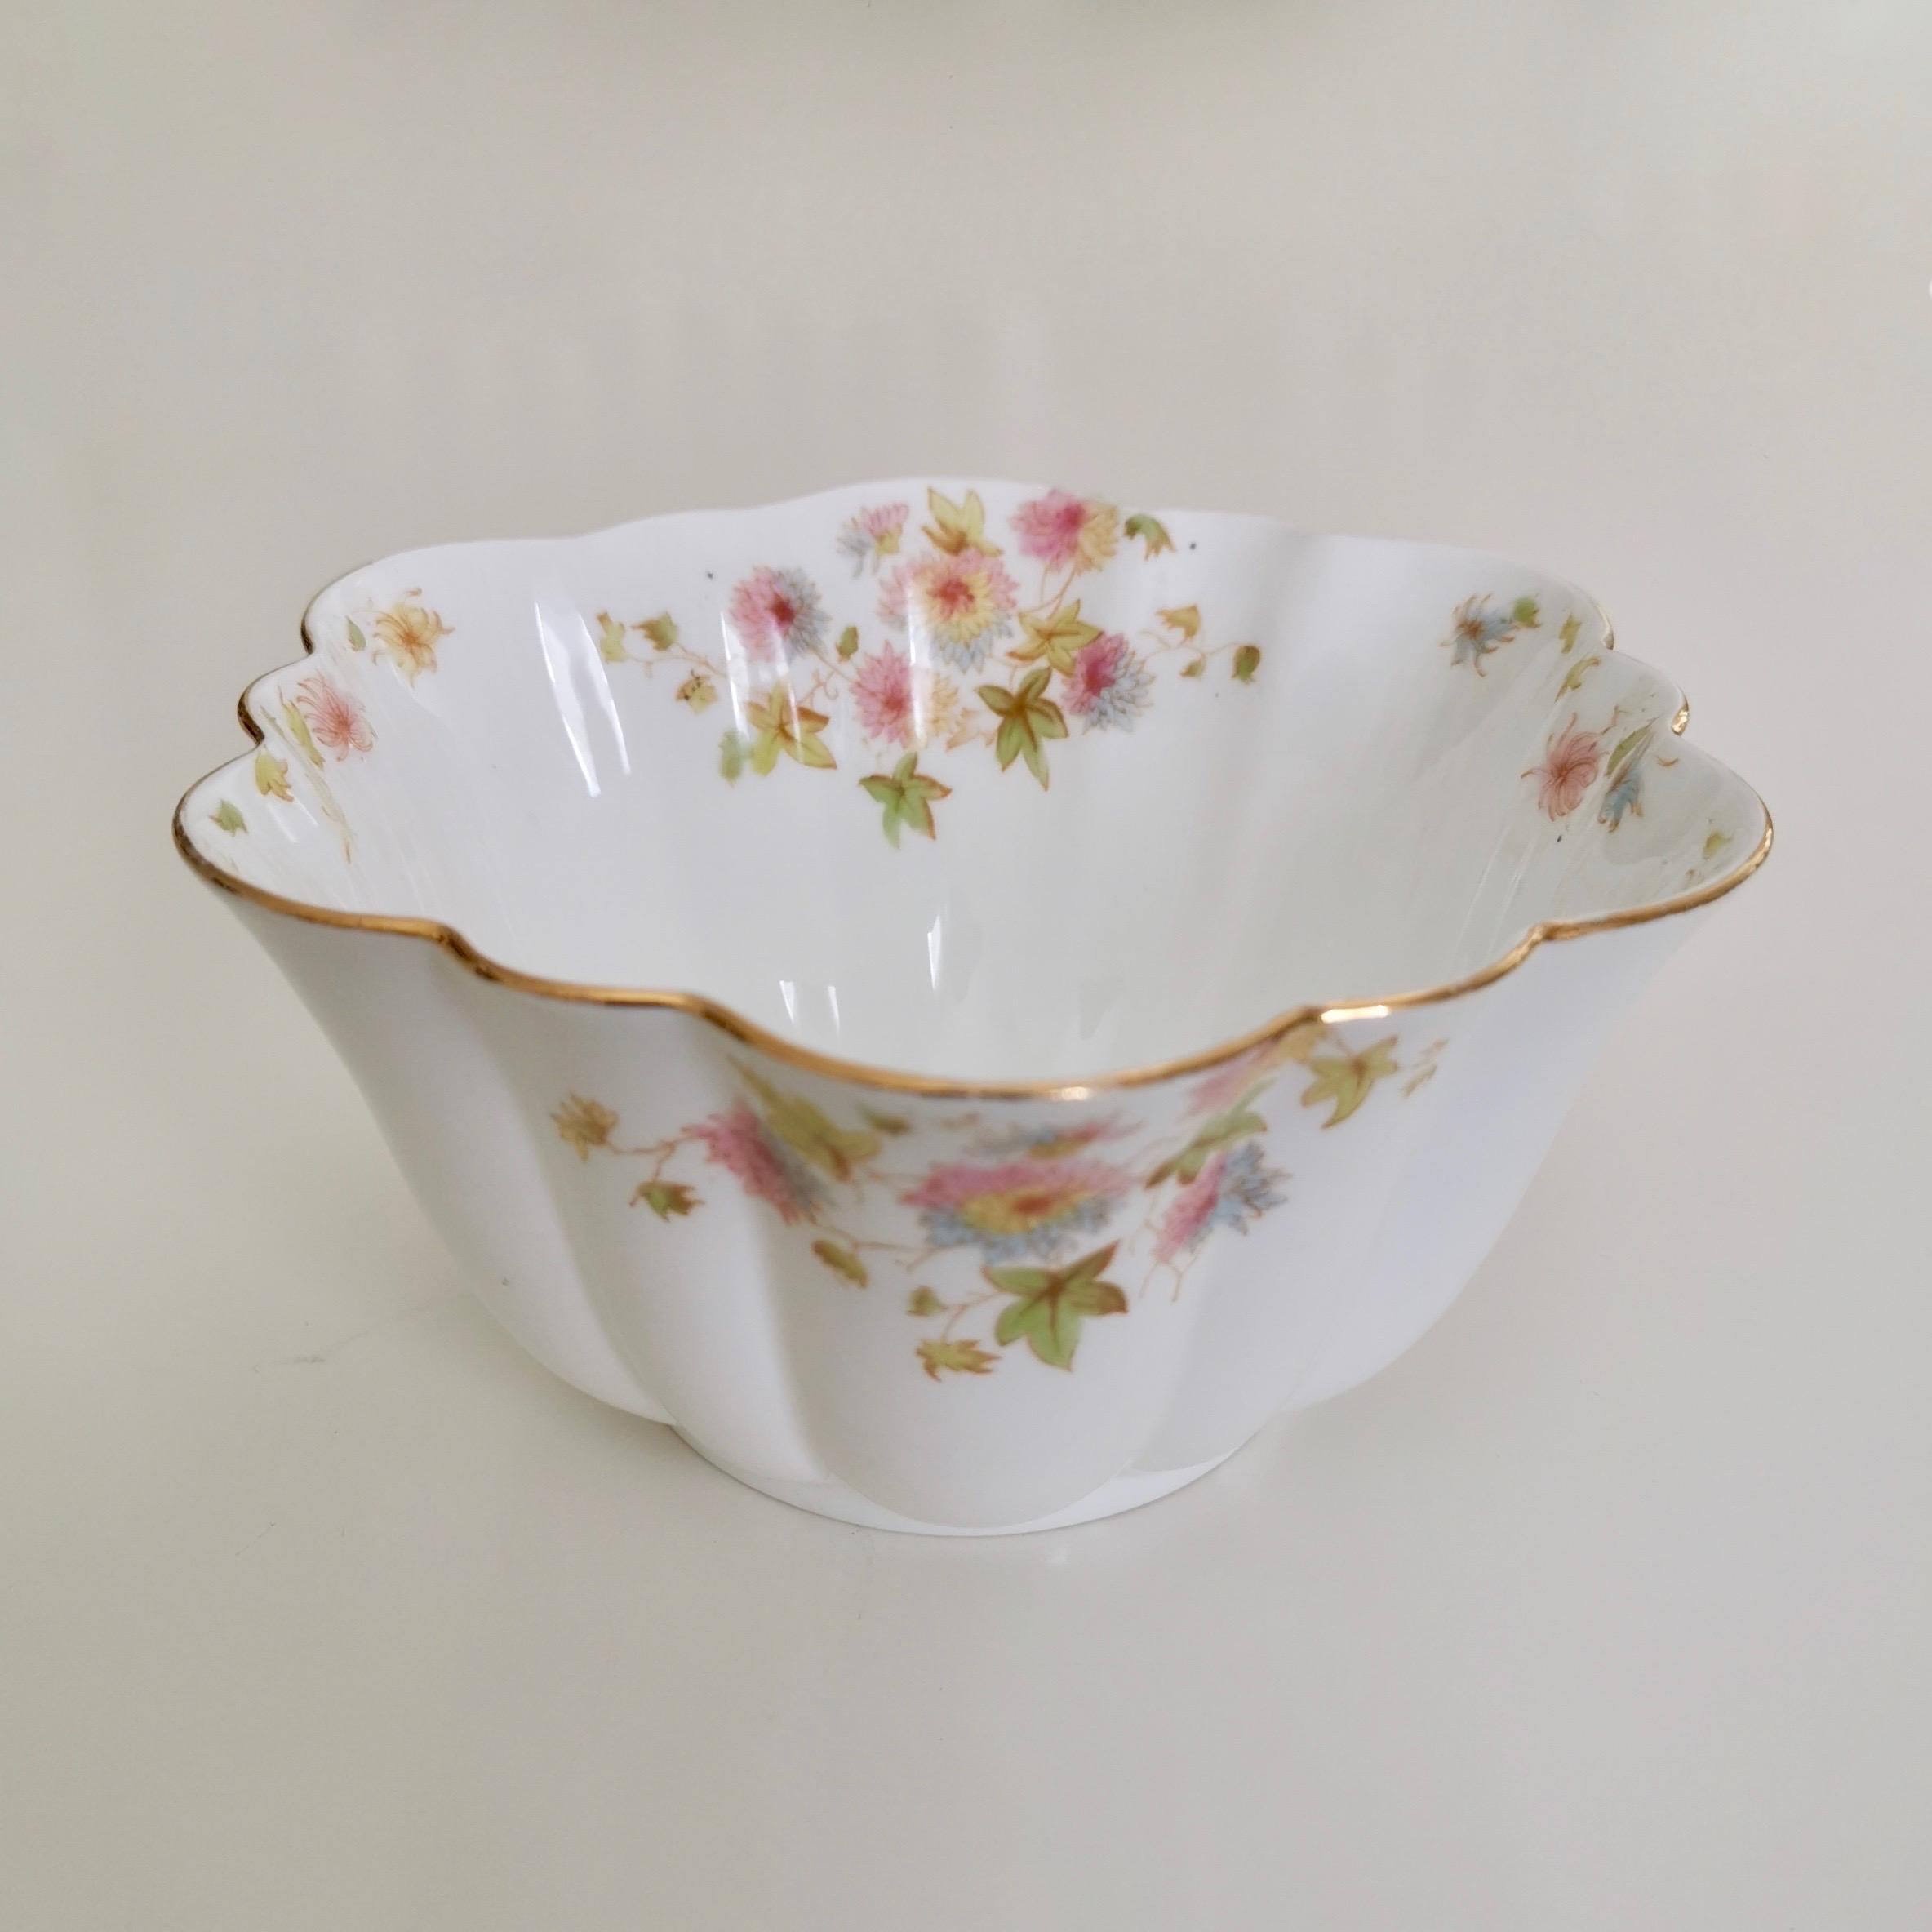 Wileman Porcelain Tea Set, Chrysanthemum, Pastel Colors, Art Nouveau, 1896 2